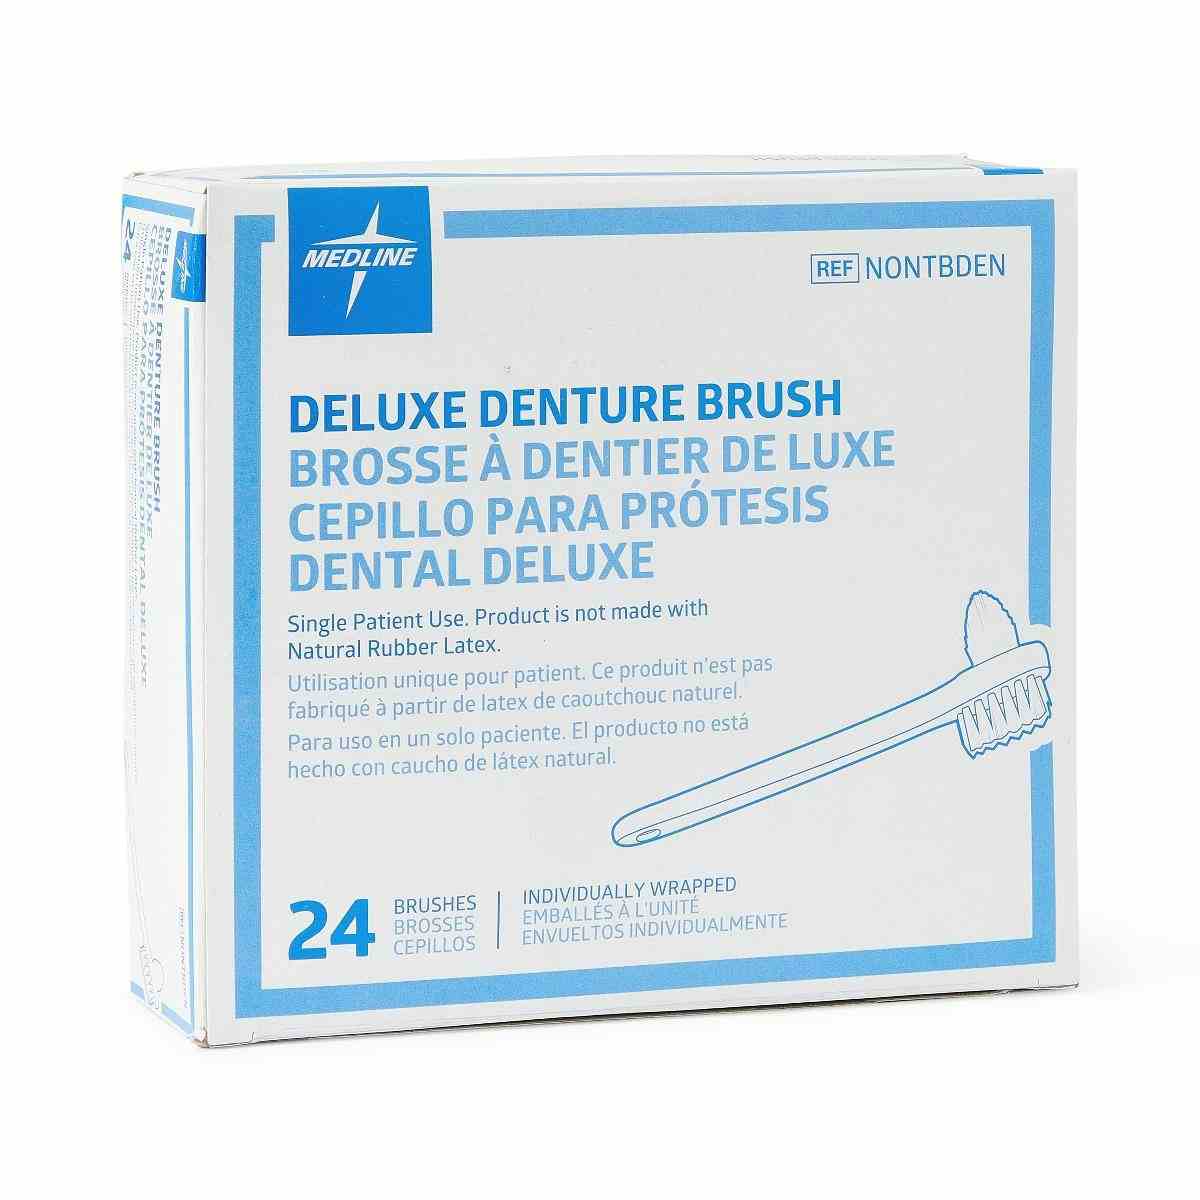 Medline 2-Sided Deluxe Denture Brushes, NONTBDENZ, Box of 24